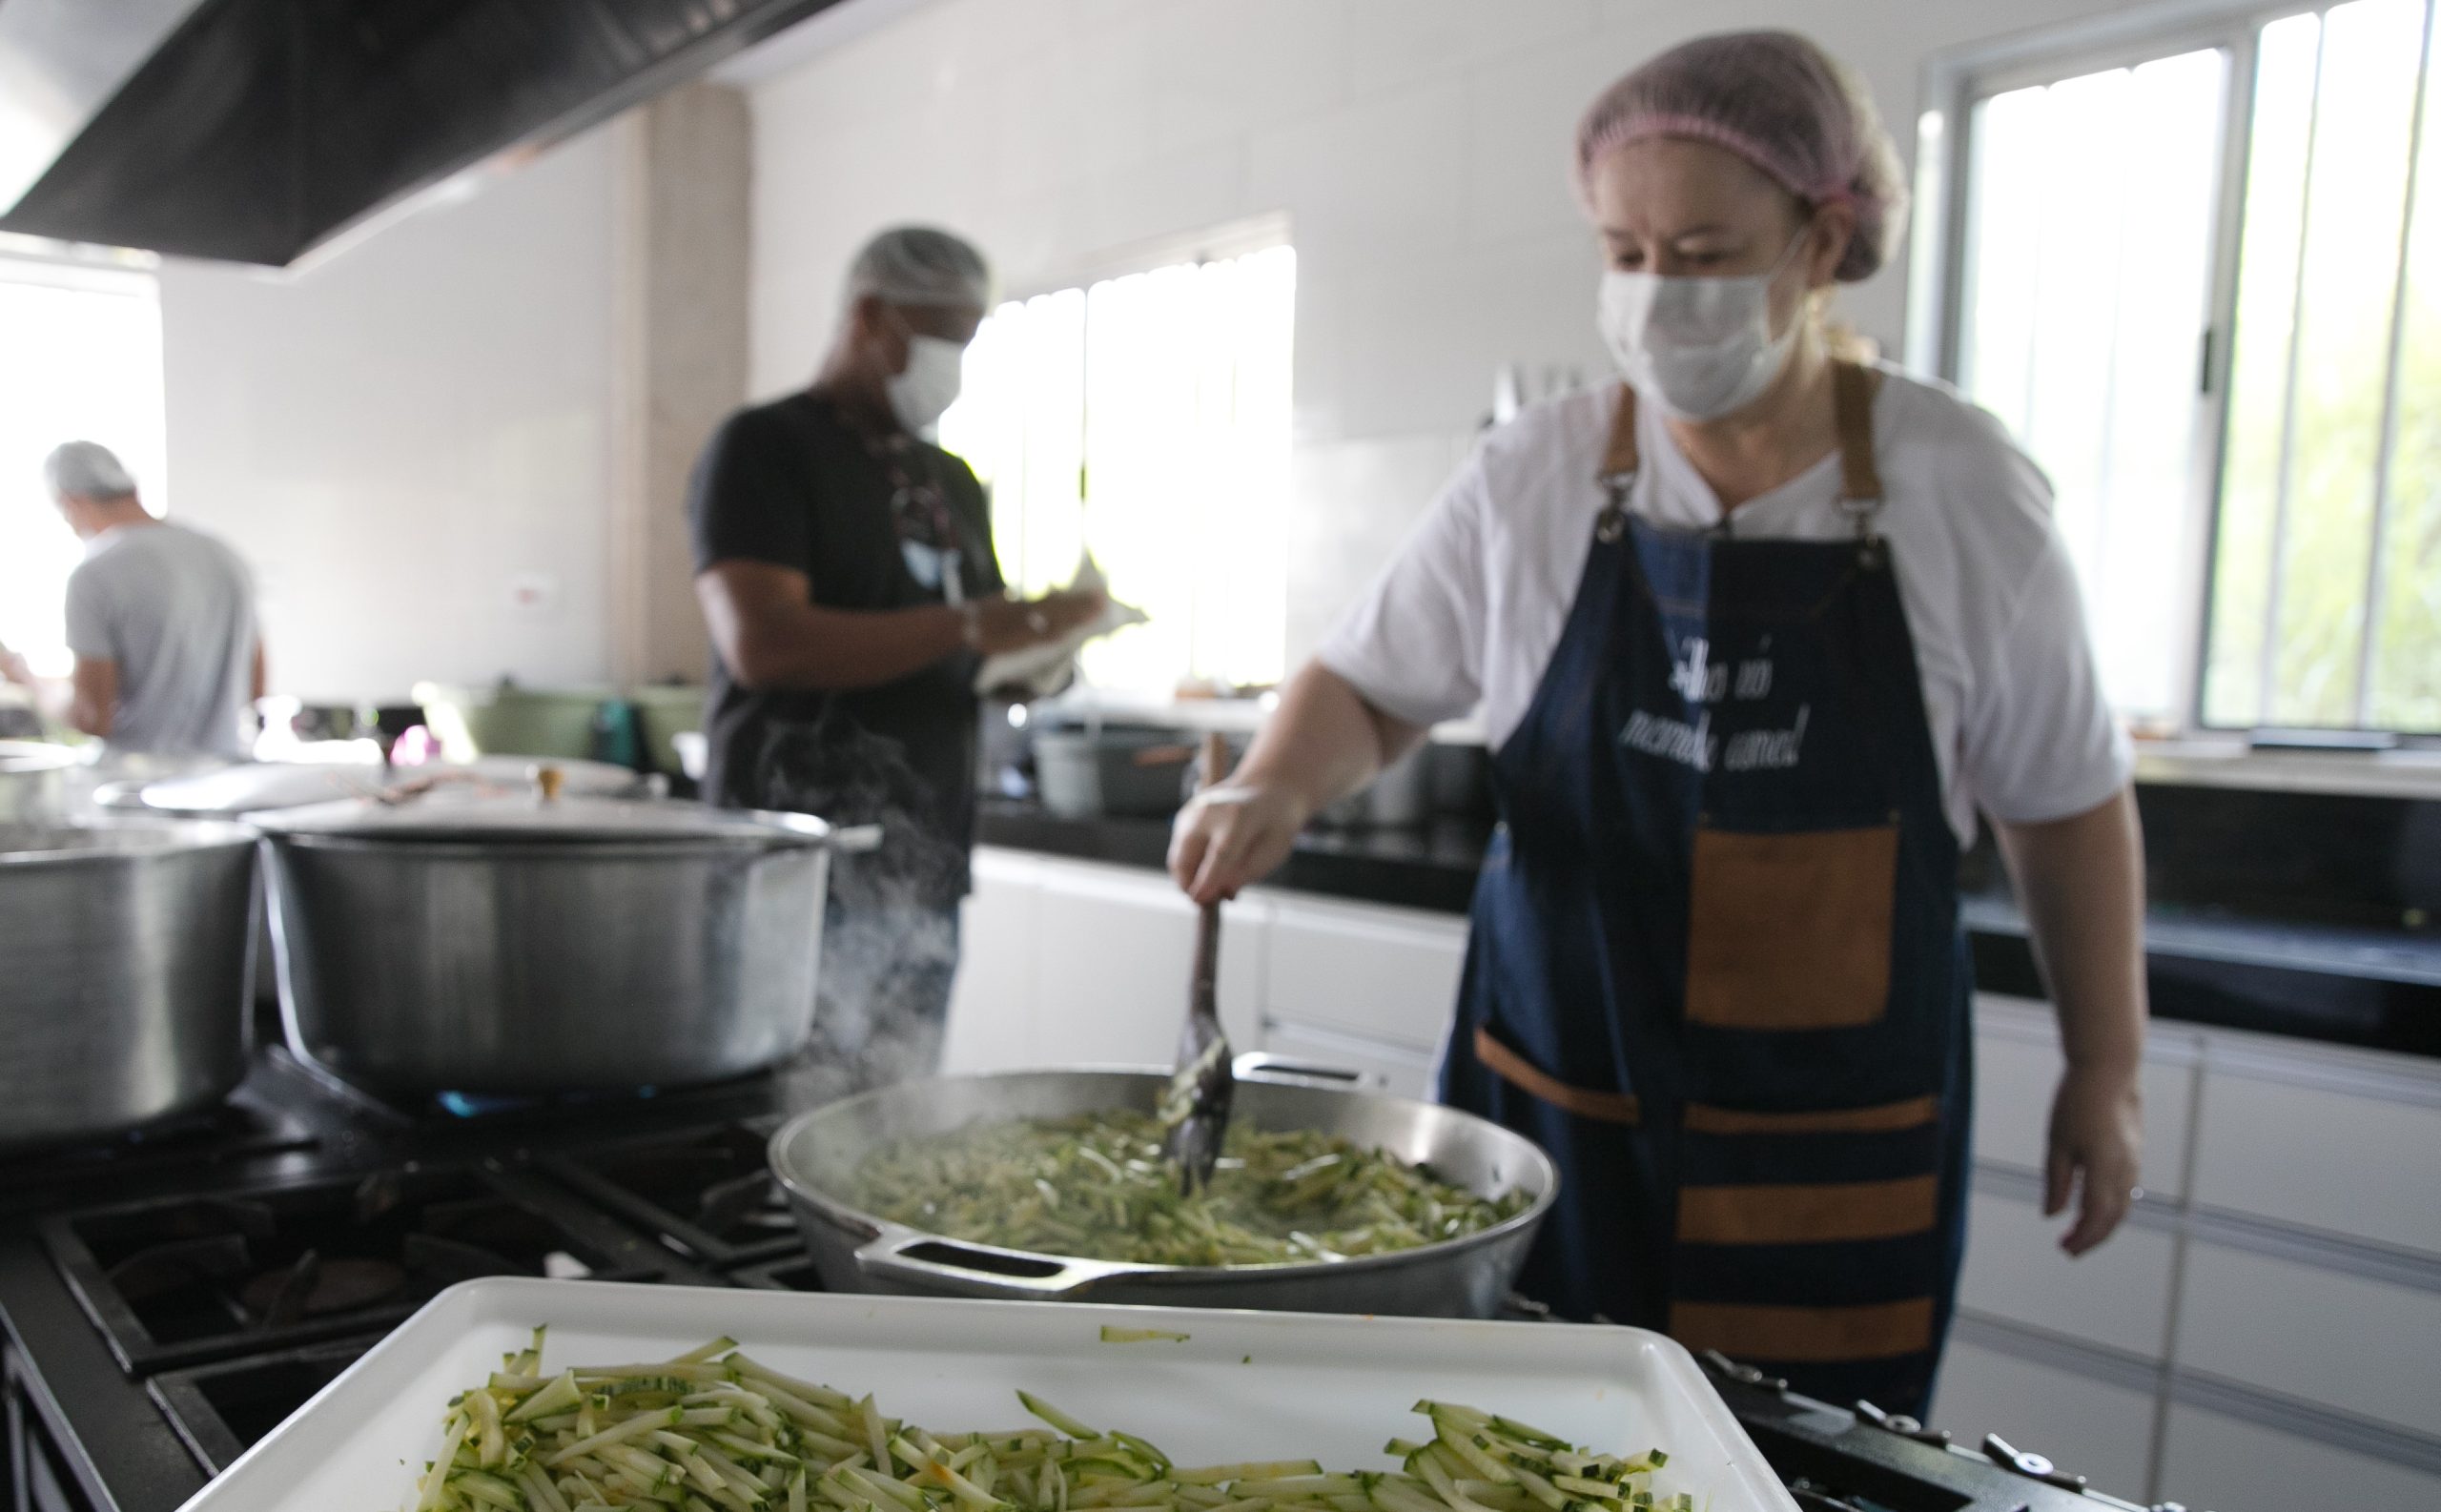 “Dai-lhes vós mesmos de comer”: iniciativa da Catedral Cristo Rei multiplica a partilha de alimentos e esperança